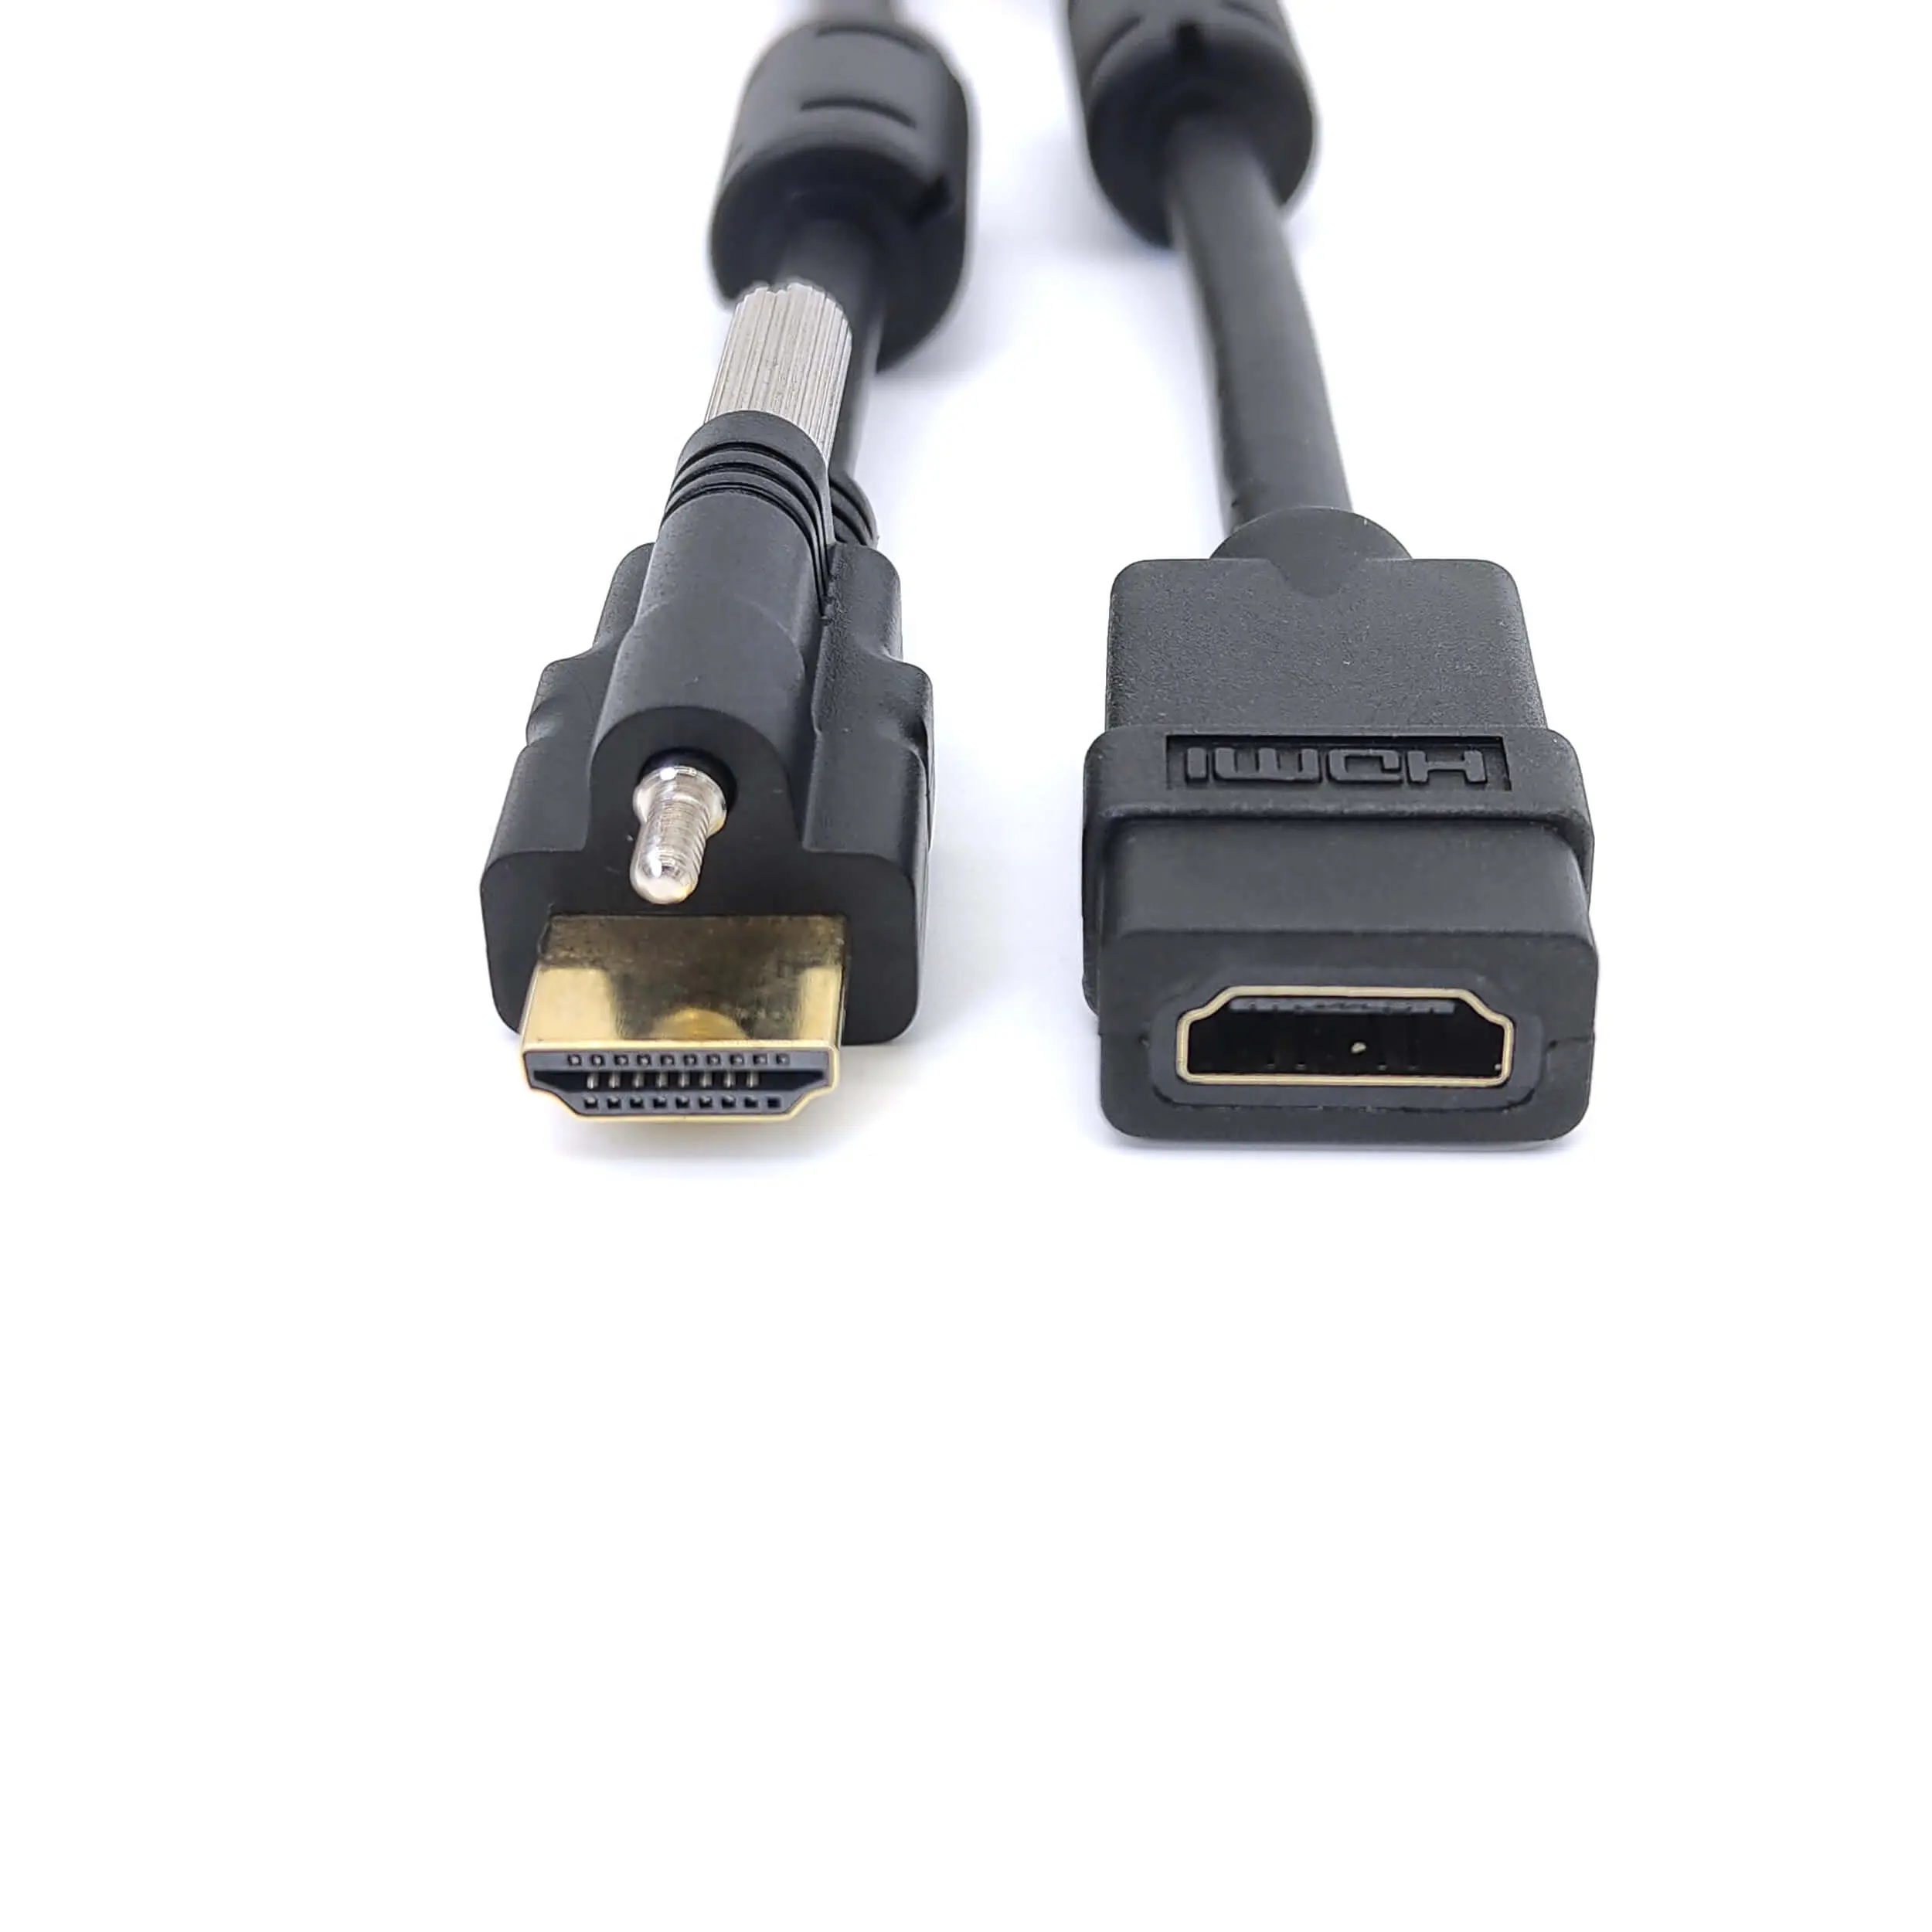 FARSICNE Bloqueo HDMI macho a hembra cable de extensión Cable extensor de montaje en panel HDMI con conector de bloqueo